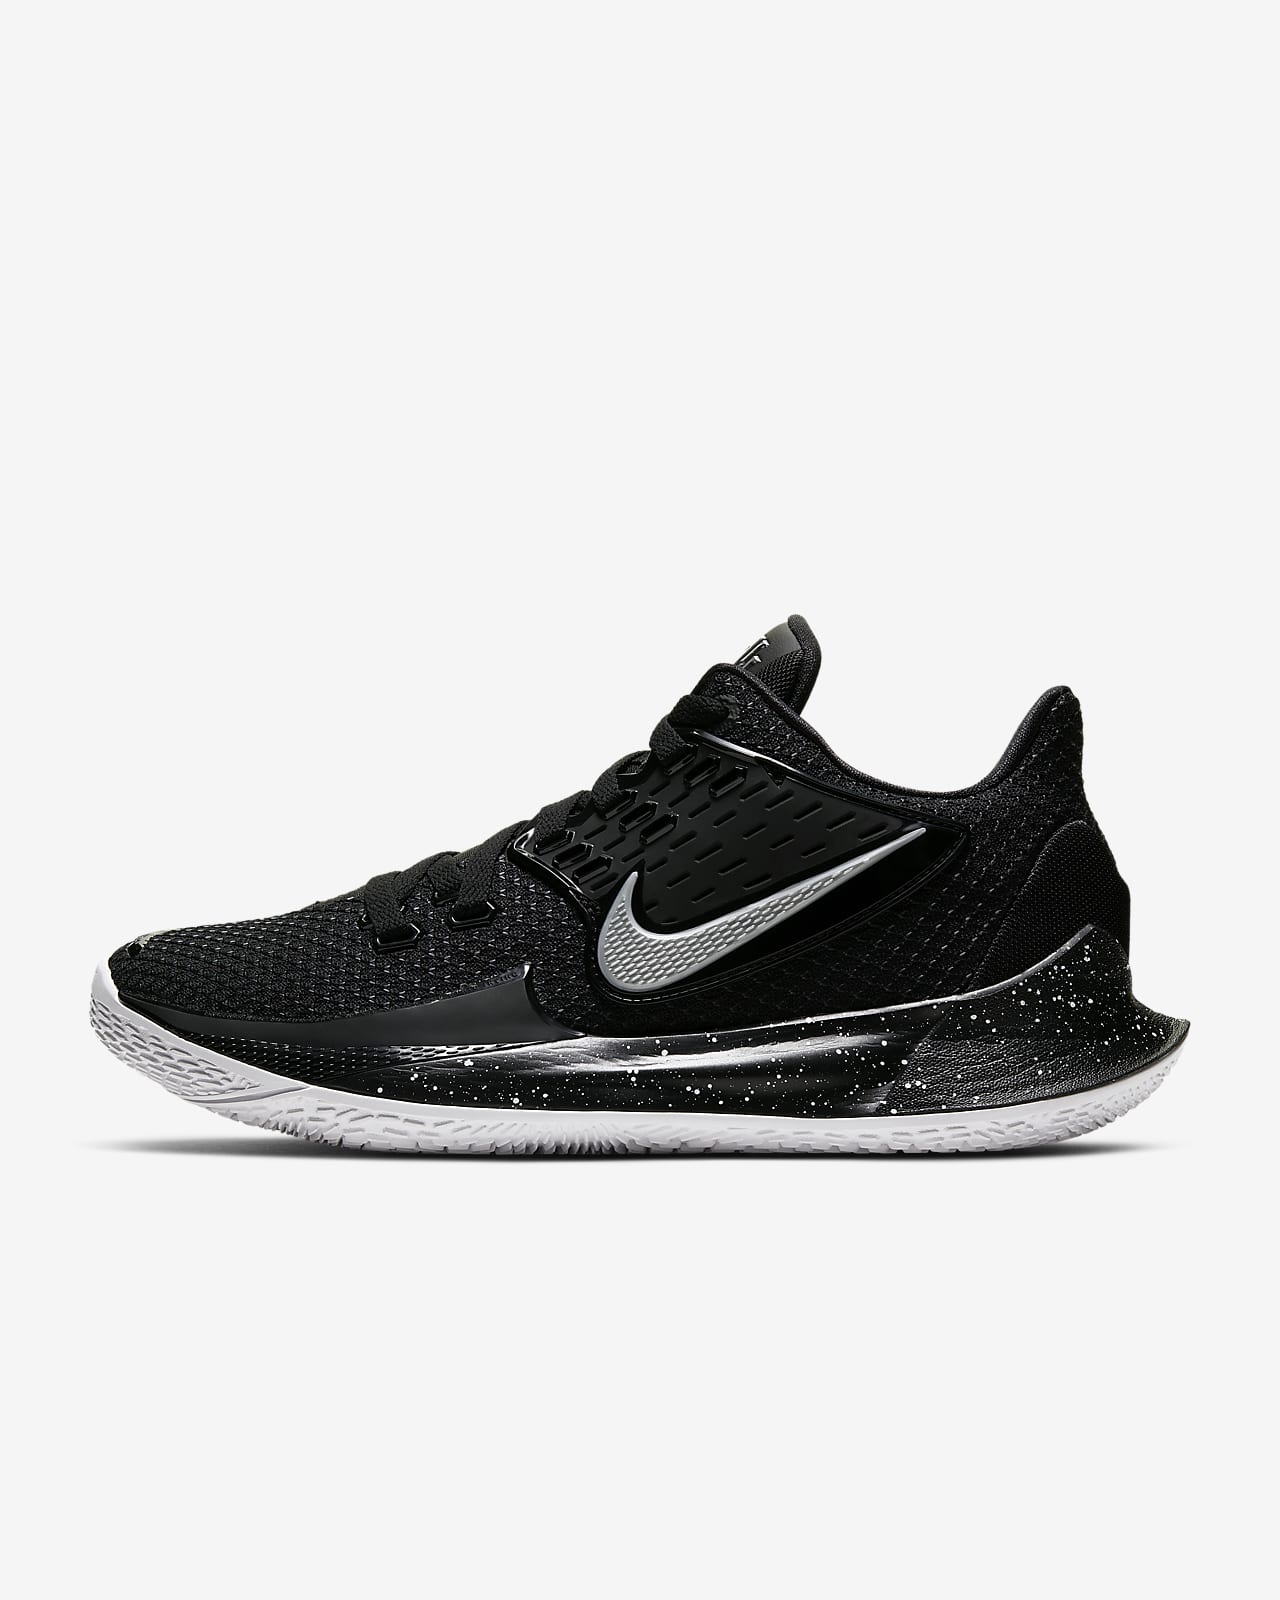 Kyrie Low 2 Basketball Shoe. Nike ID